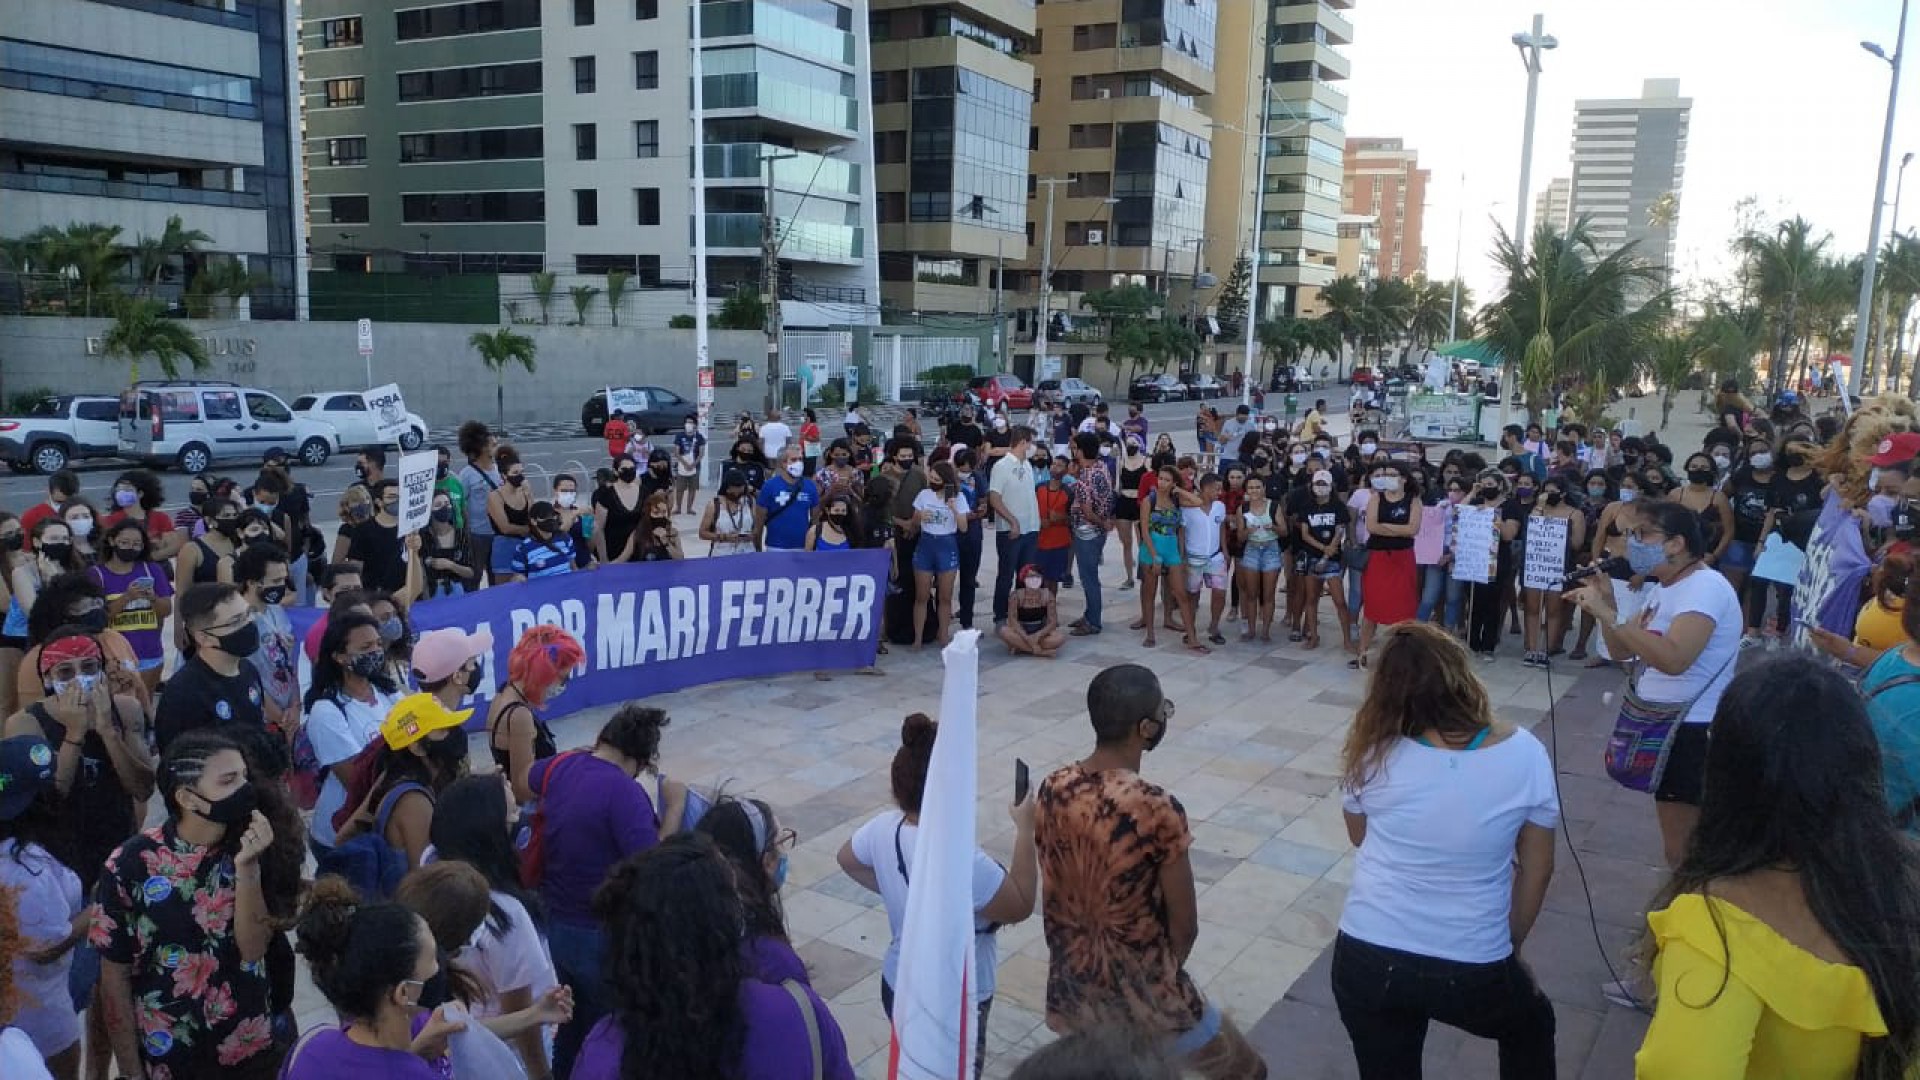 Manifestação na Praia de Iracema pede justiça para Mari Ferrer, influencer vítima de estupro(Foto: MARÍLIA FREITAS/ESPECIAL PARA O POVO)